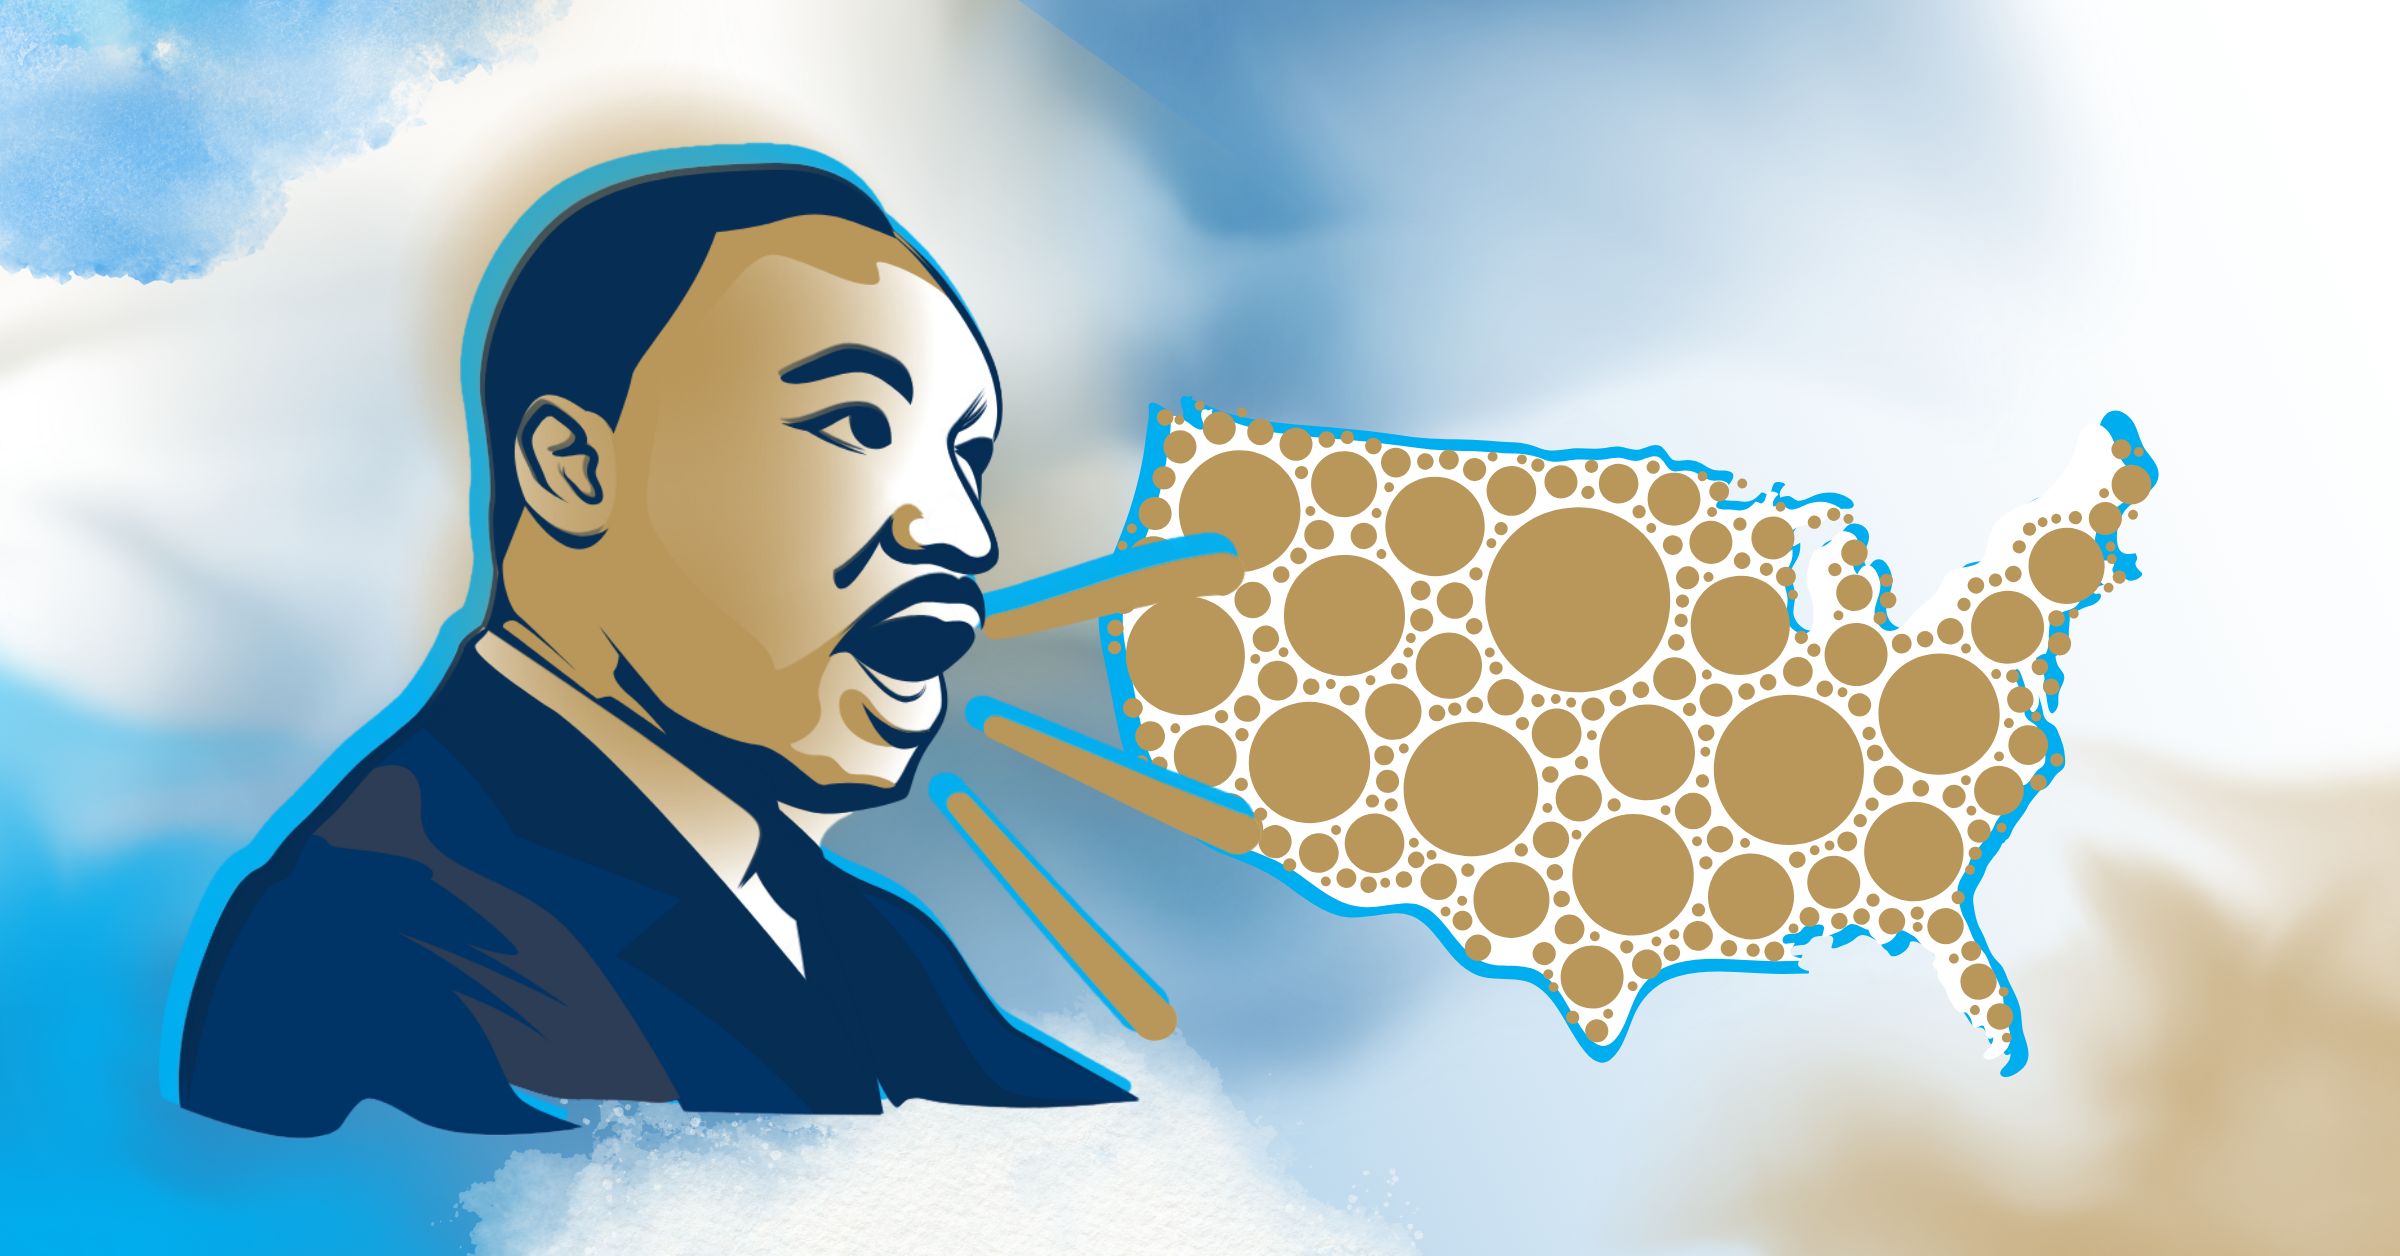 Día de Martin Luther King, Jr